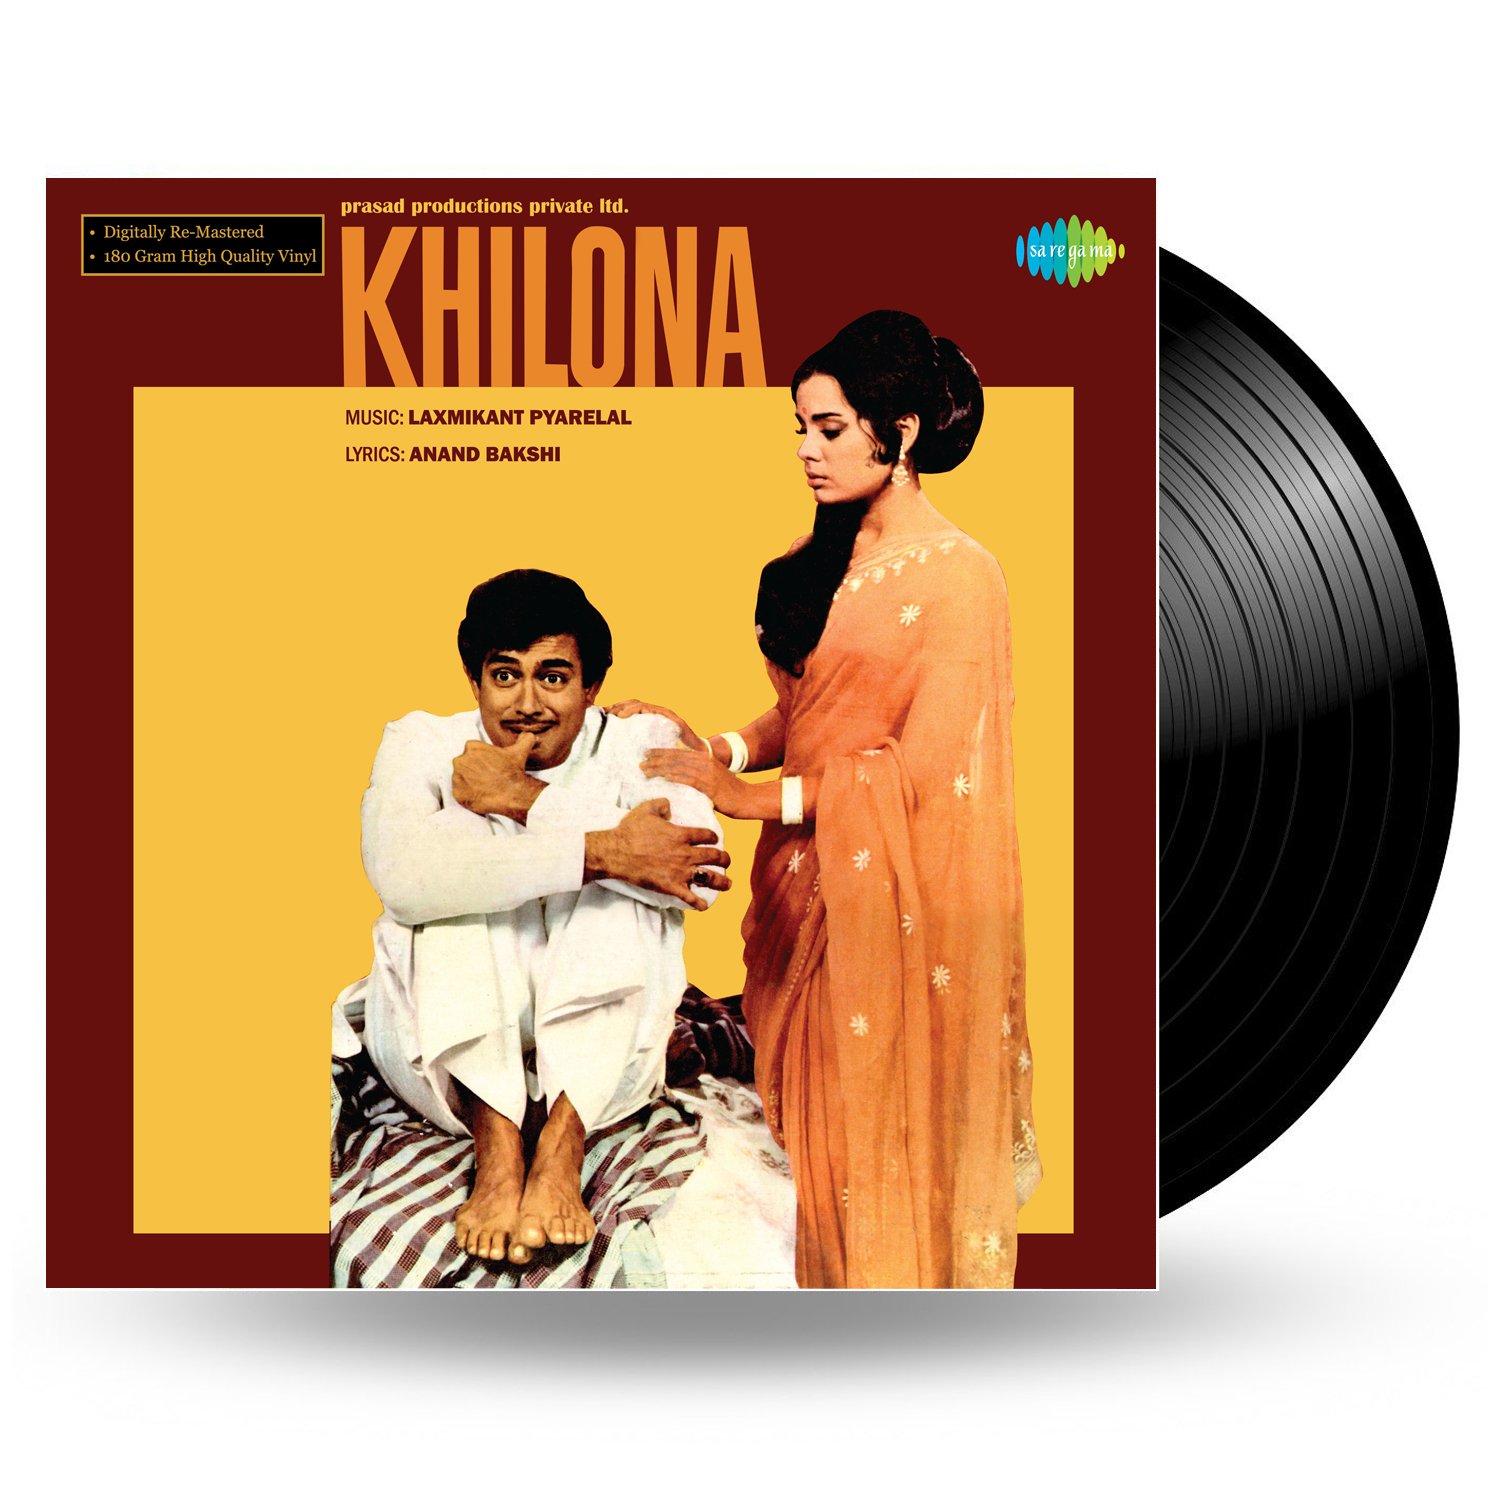 Игрушка Khilona 1970. Udit Narayan Laxmikant Pyarelal. Mr India Soundtrack.